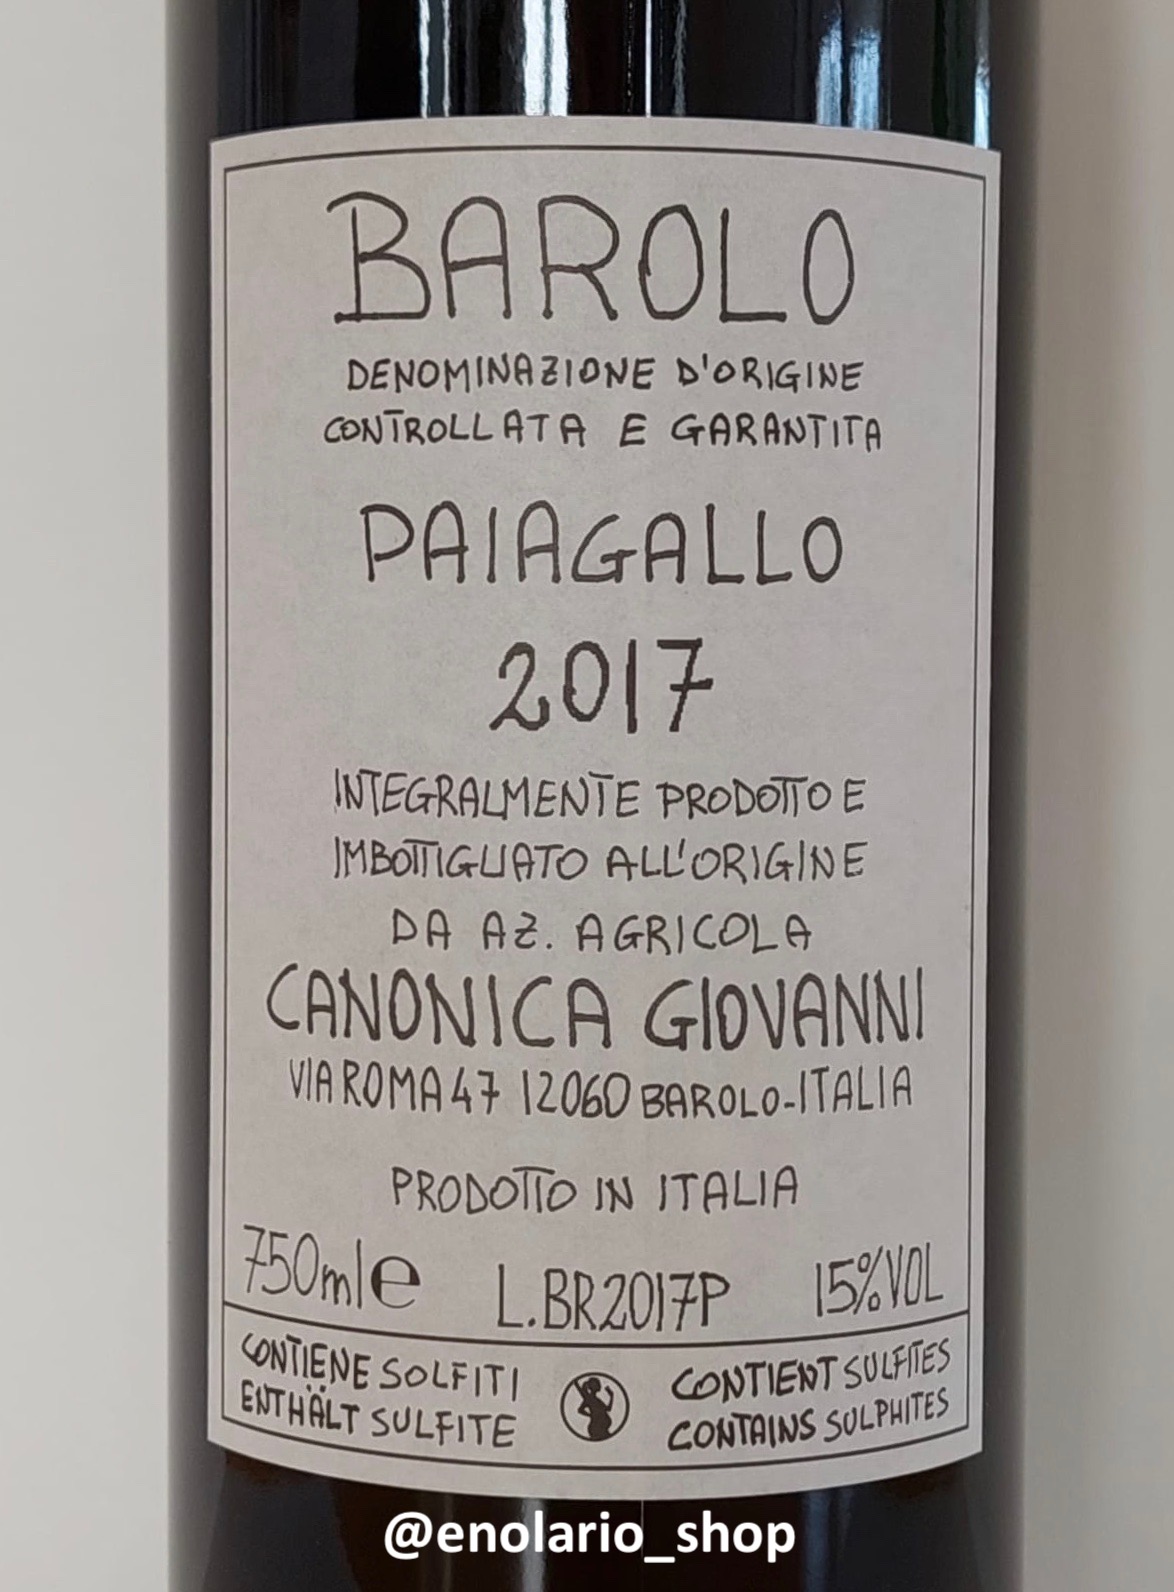 Giovanni Canonica Paiagallo 2017